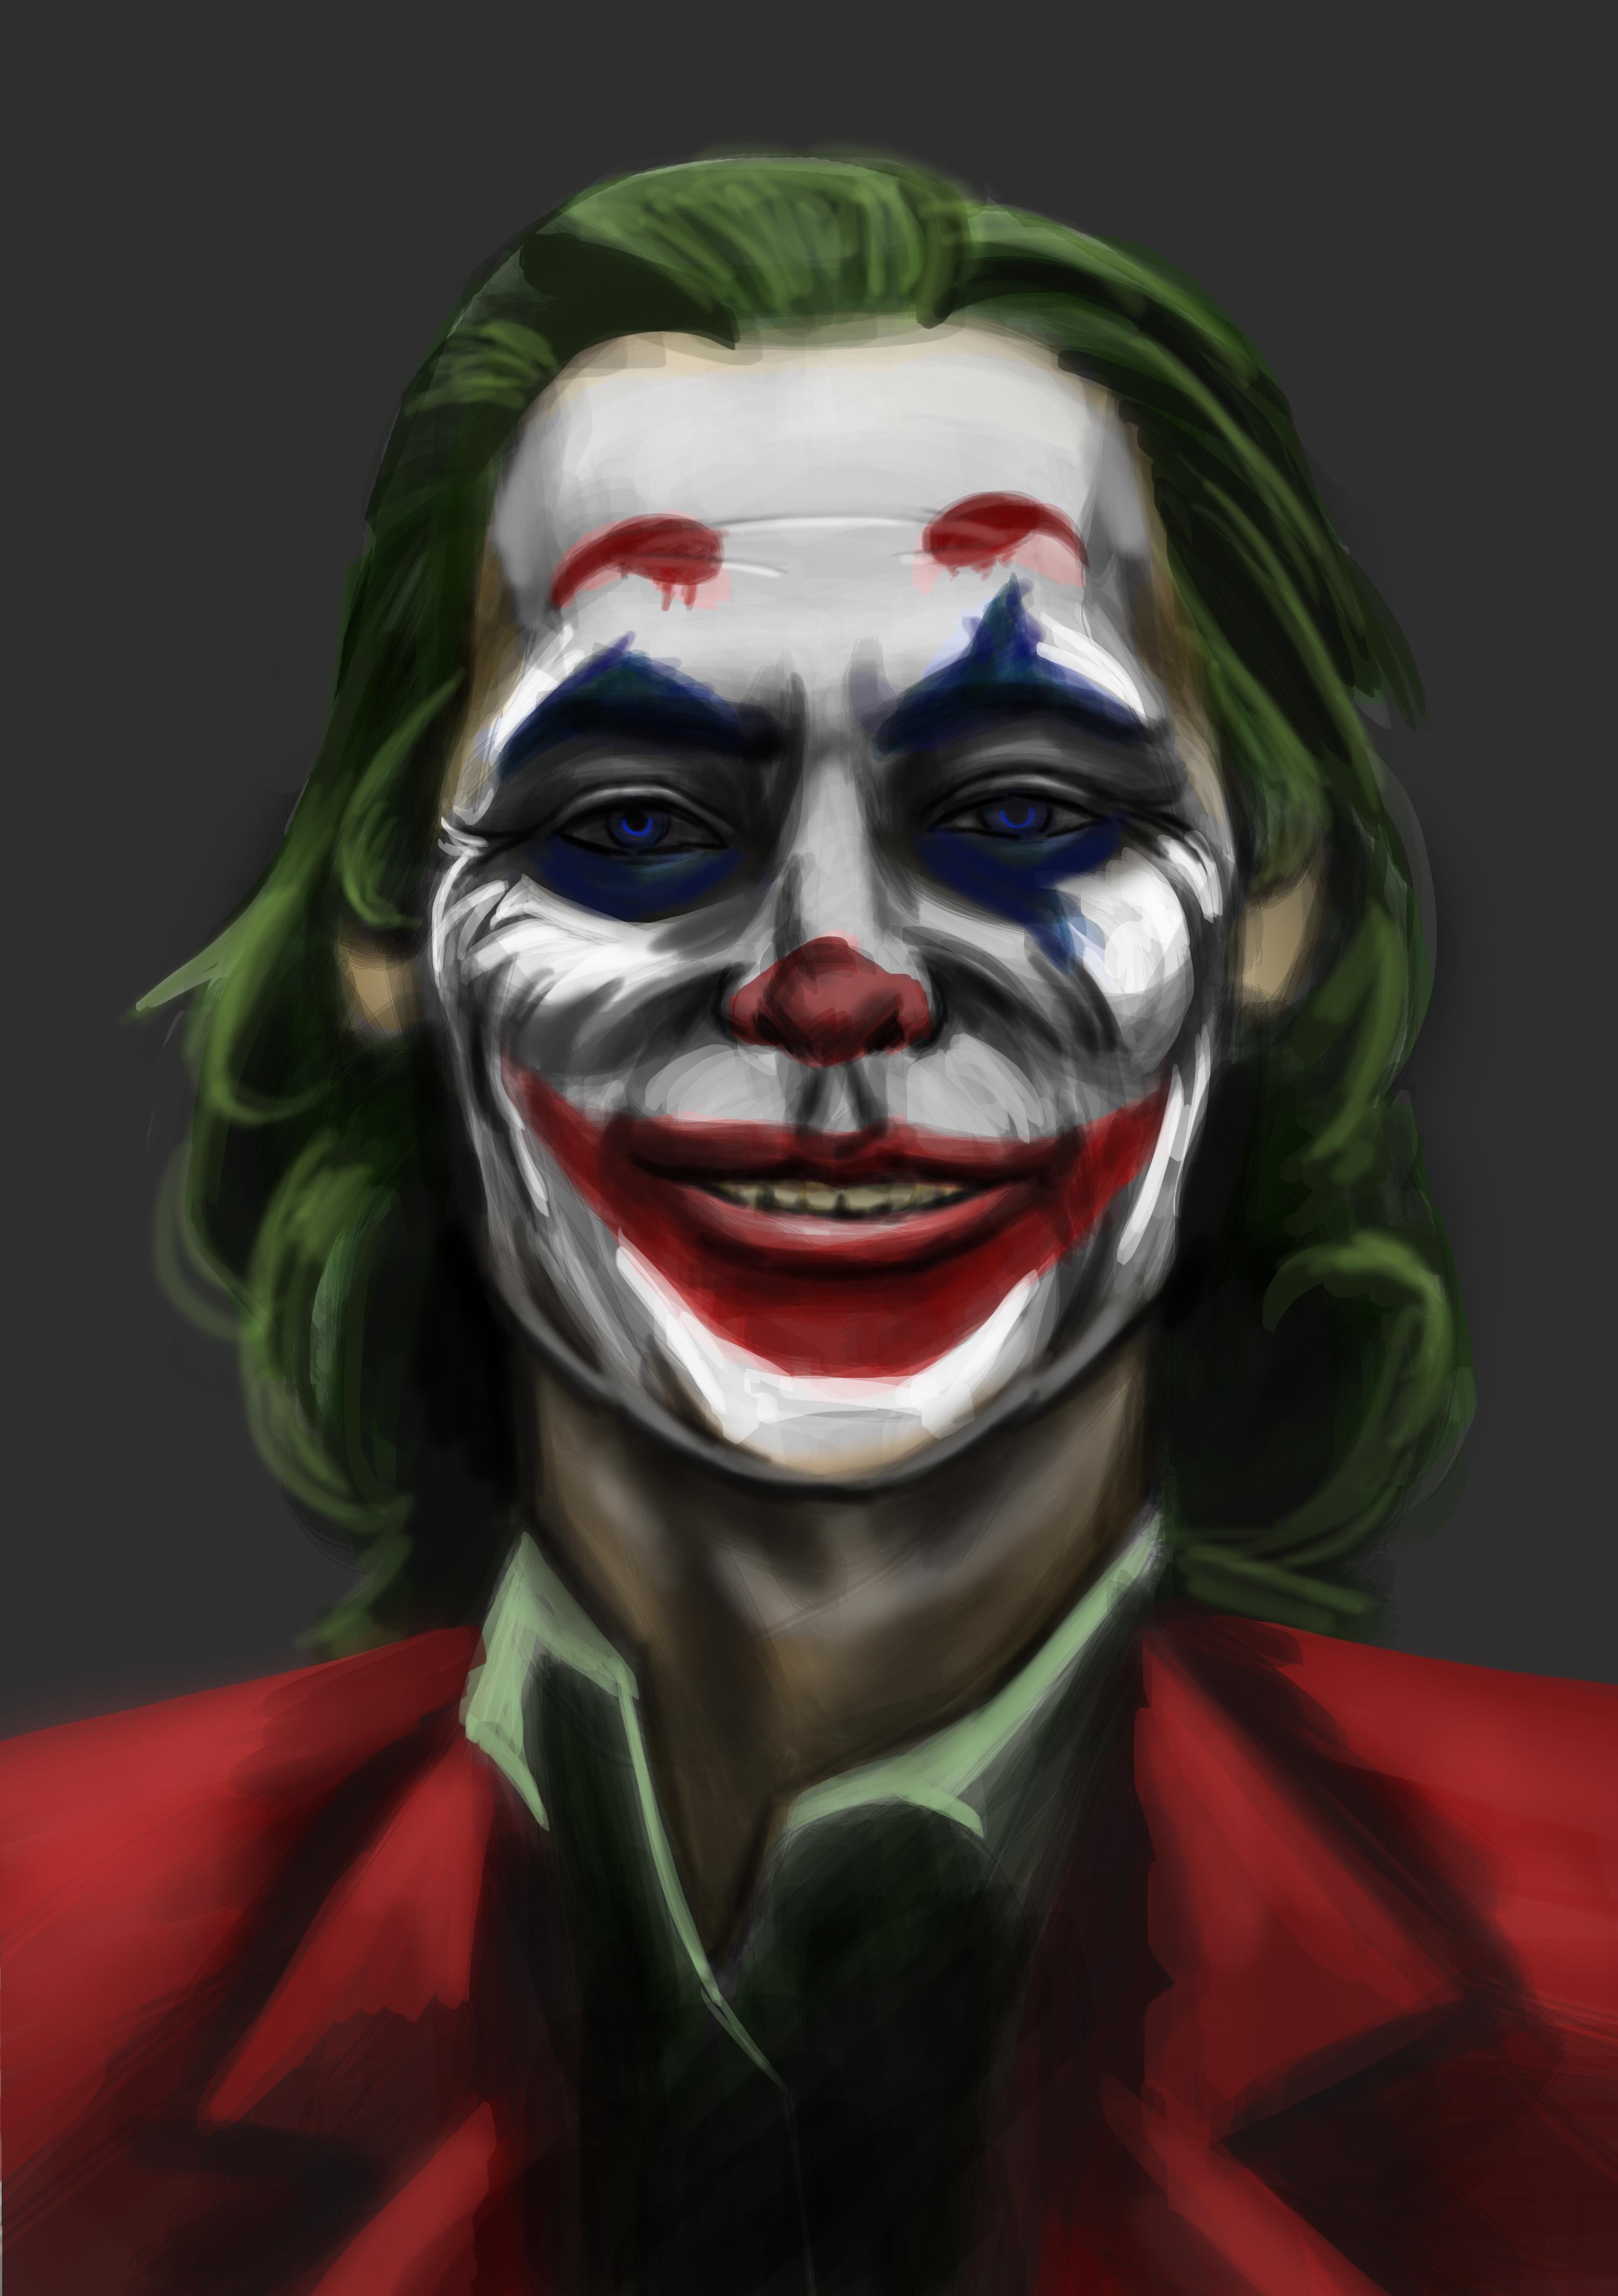 Not An Etch A Sketch Unfortunately But Joaquin Phoenix's Joker